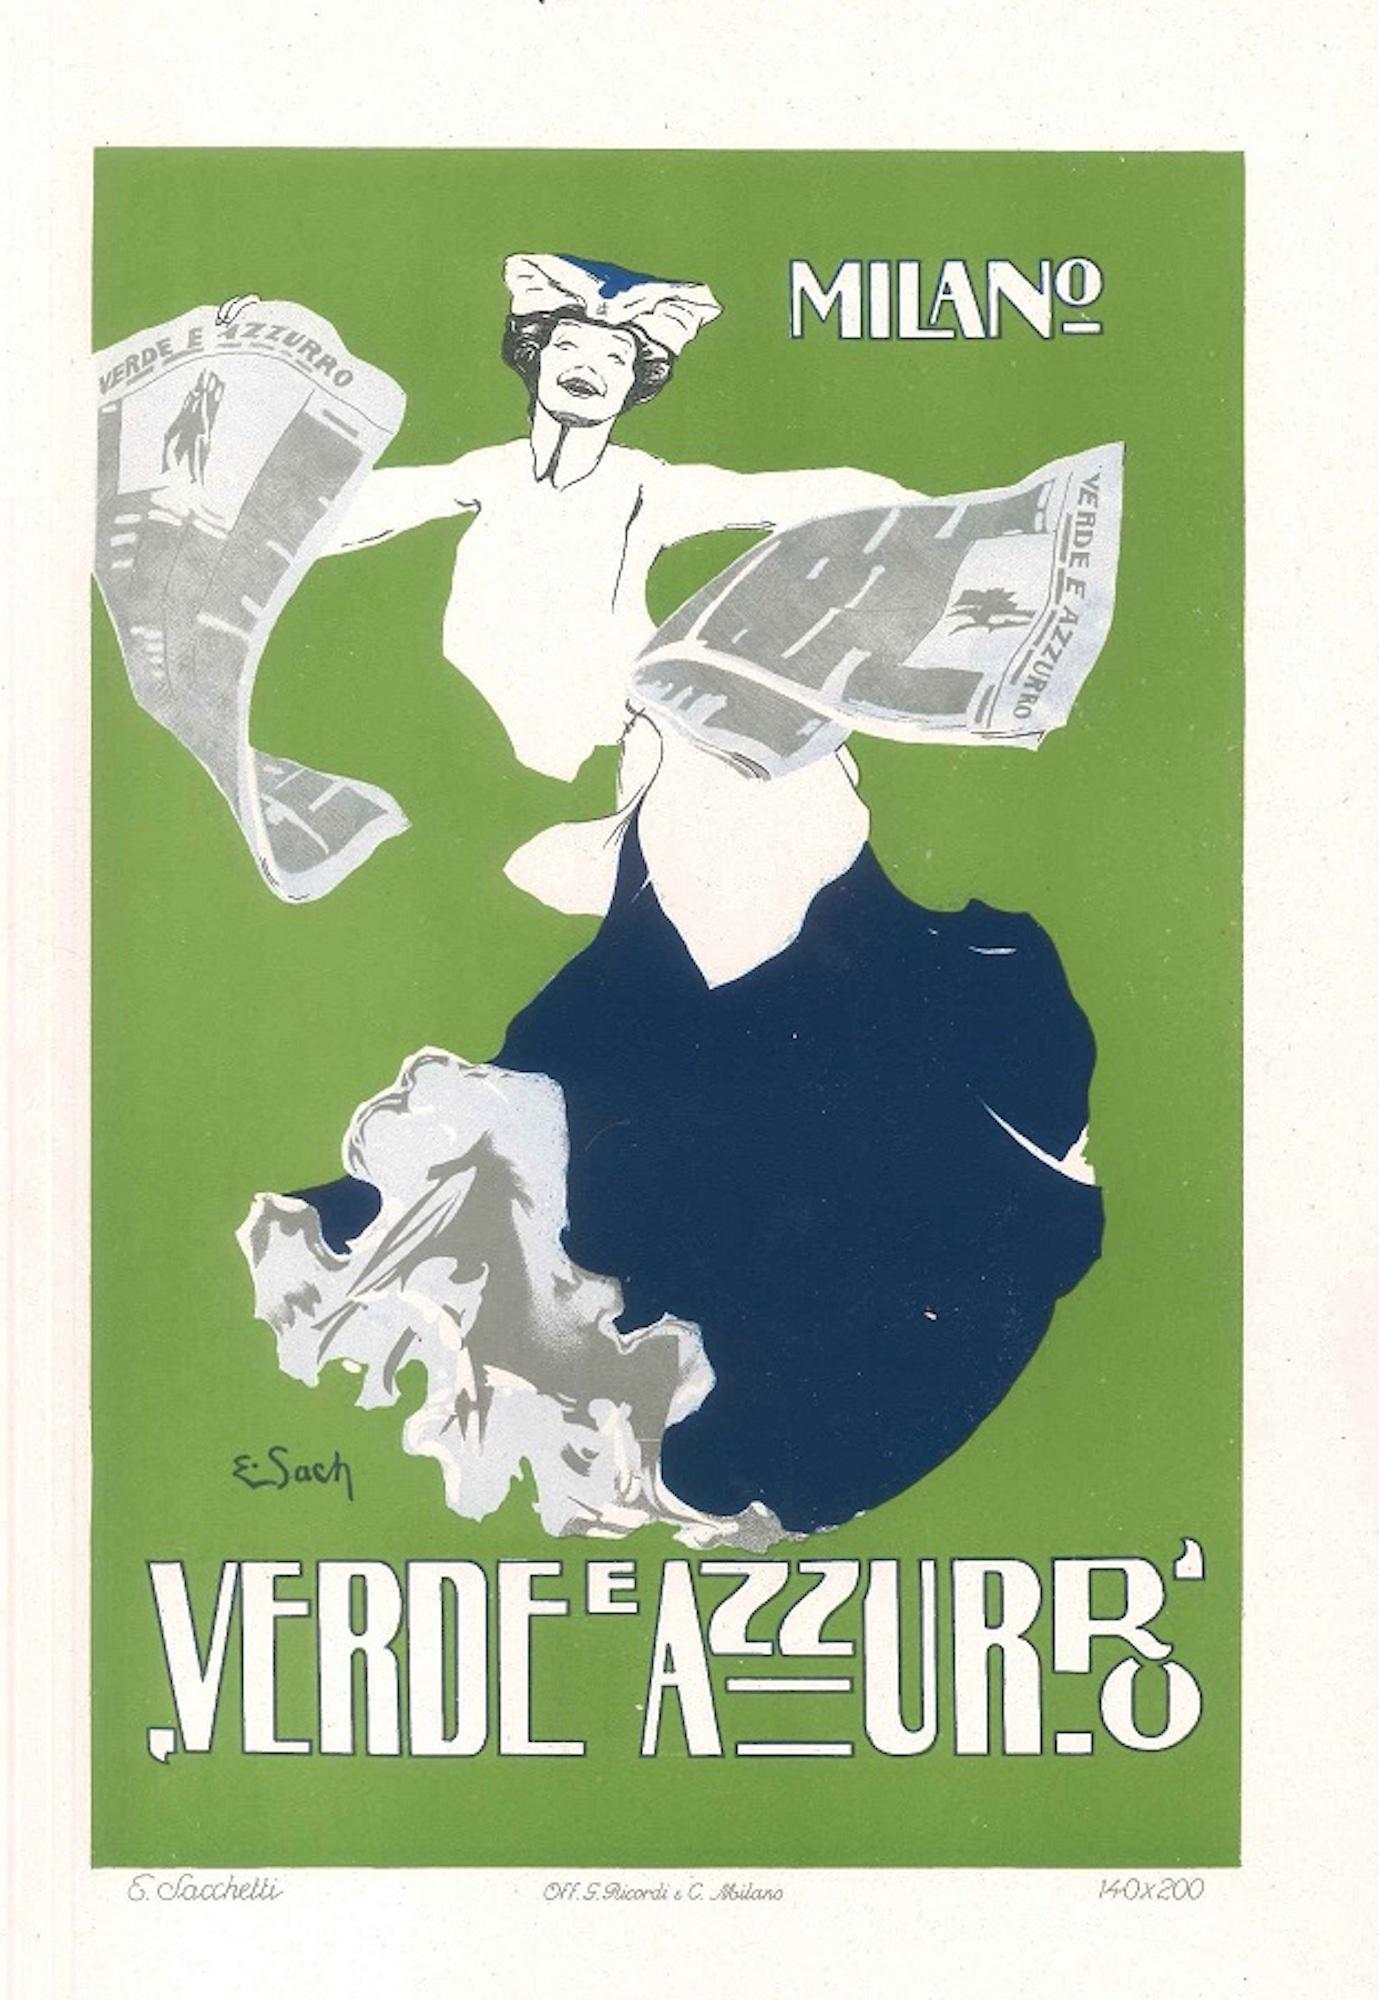 Enrico Sacchetti Figurative Print - Verde e Azzurro - Original Advertising Lithograph by E. Sacchetti - 1914 ca.